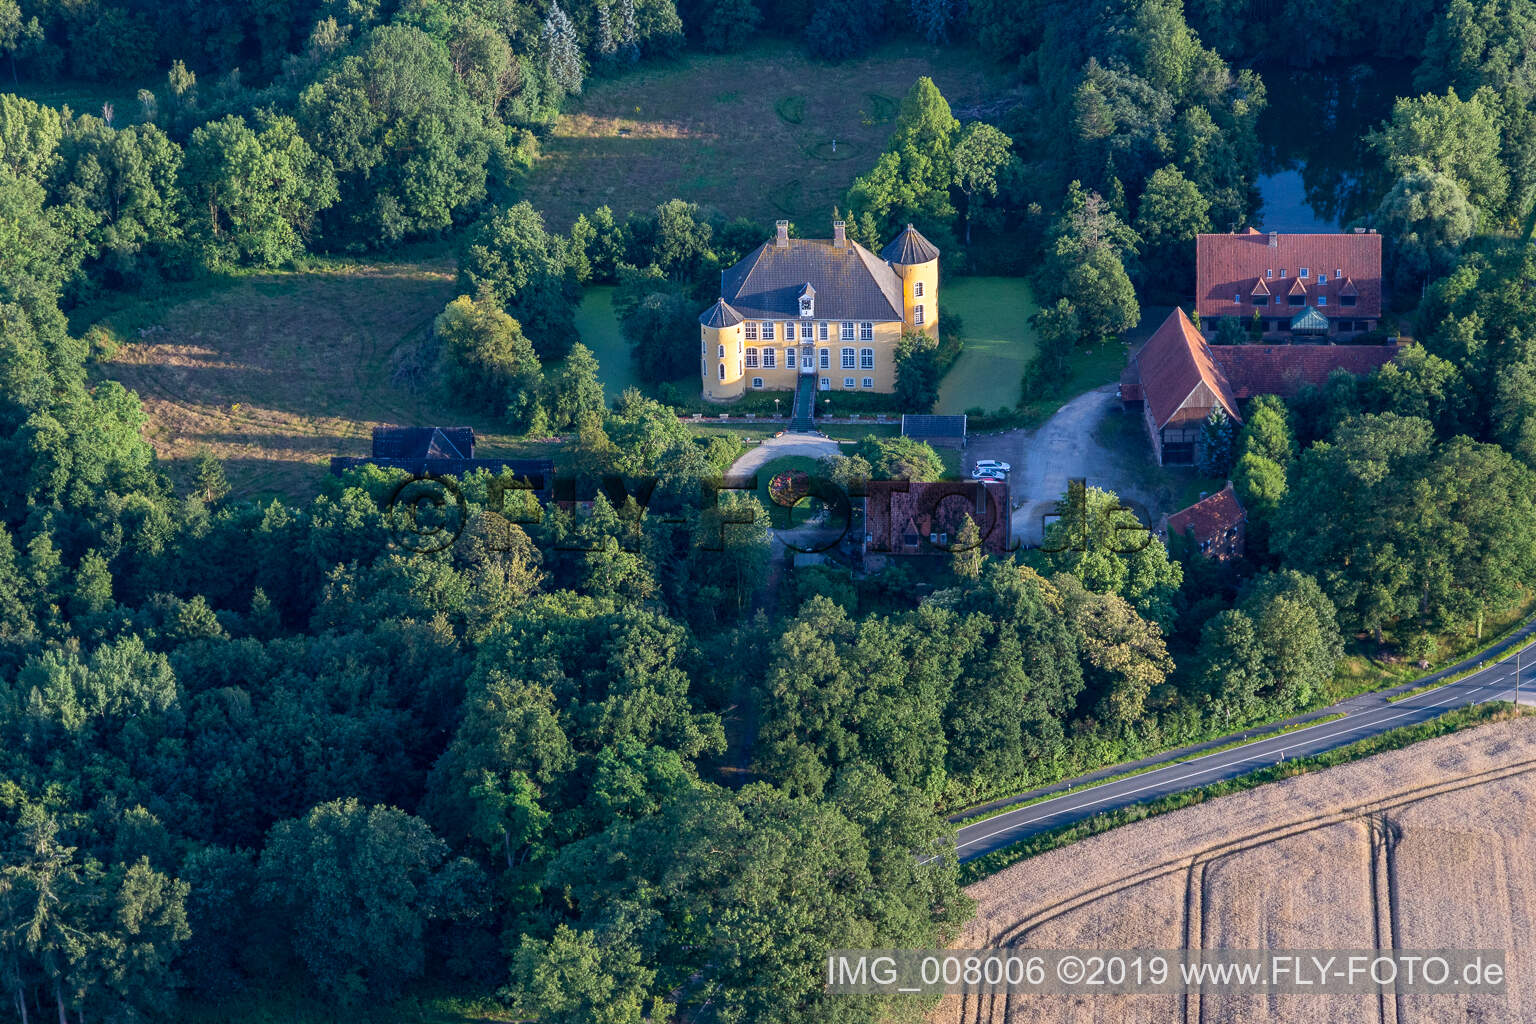 Luftbild von Hotel Schloss Diepenbrock in Bocholt im Bundesland Nordrhein-Westfalen, Deutschland